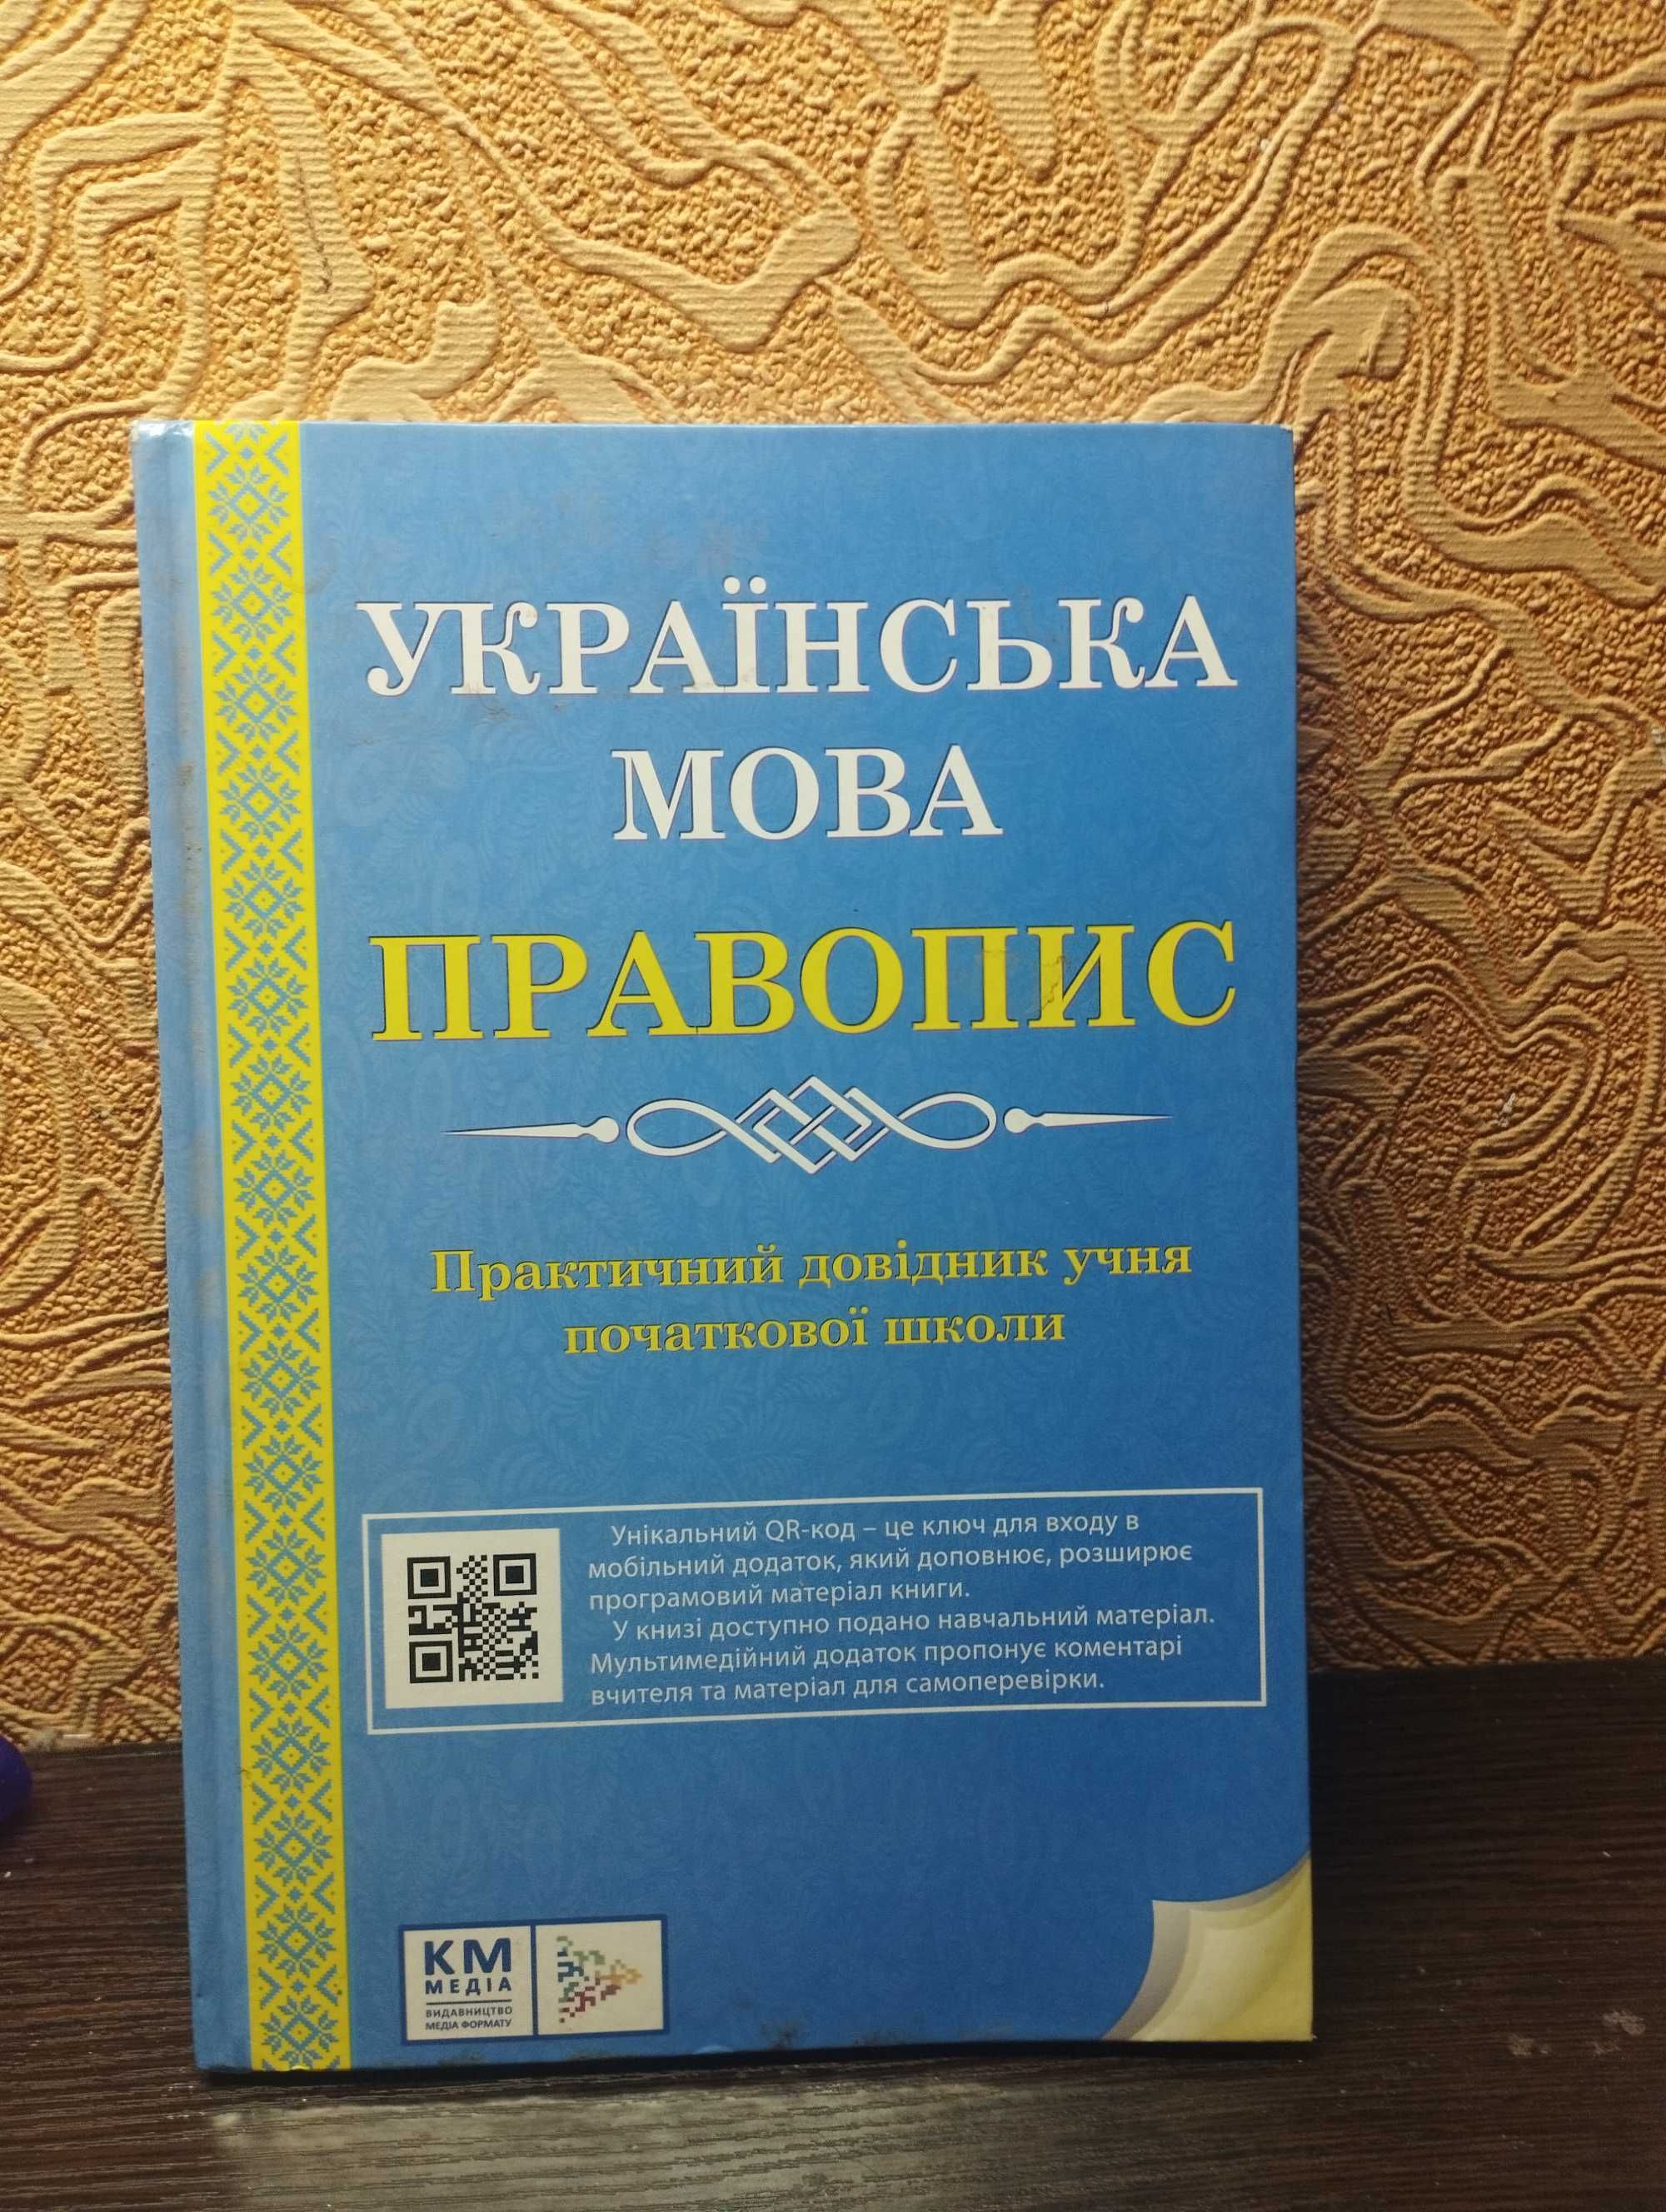 Довідники по українській мові